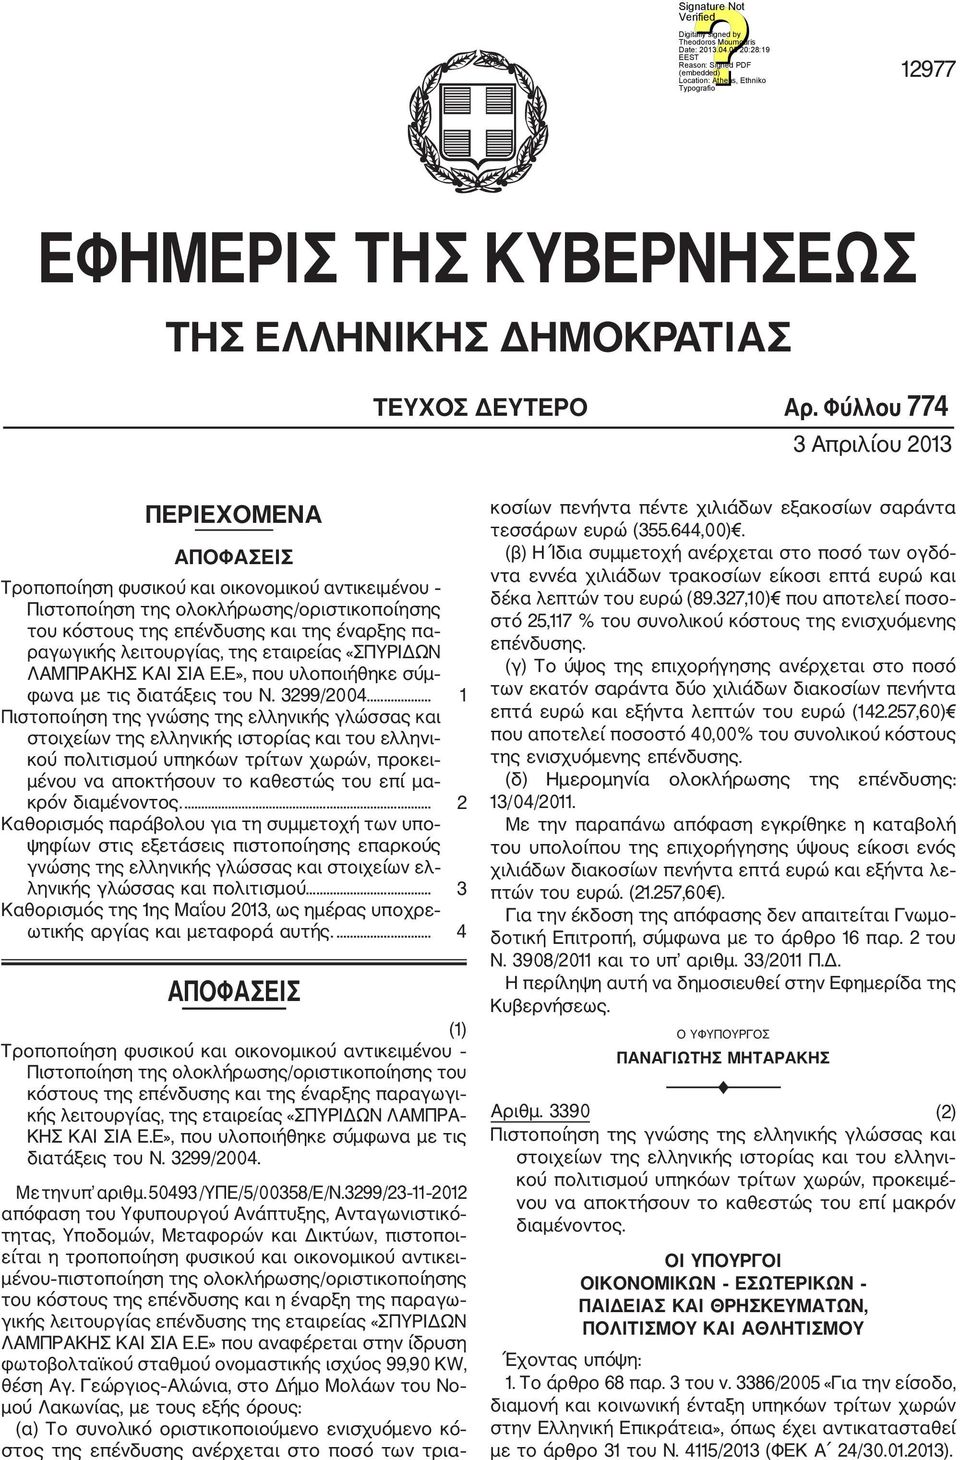 λειτουργίας, της εταιρείας «ΣΠΥΡΙΔΩΝ ΛΑΜΠΡΑΚΗΣ ΚΑΙ ΣΙΑ Ε.Ε», που υλοποιήθηκε σύμ φωνα με τις διατάξεις του Ν. 3299/2004.